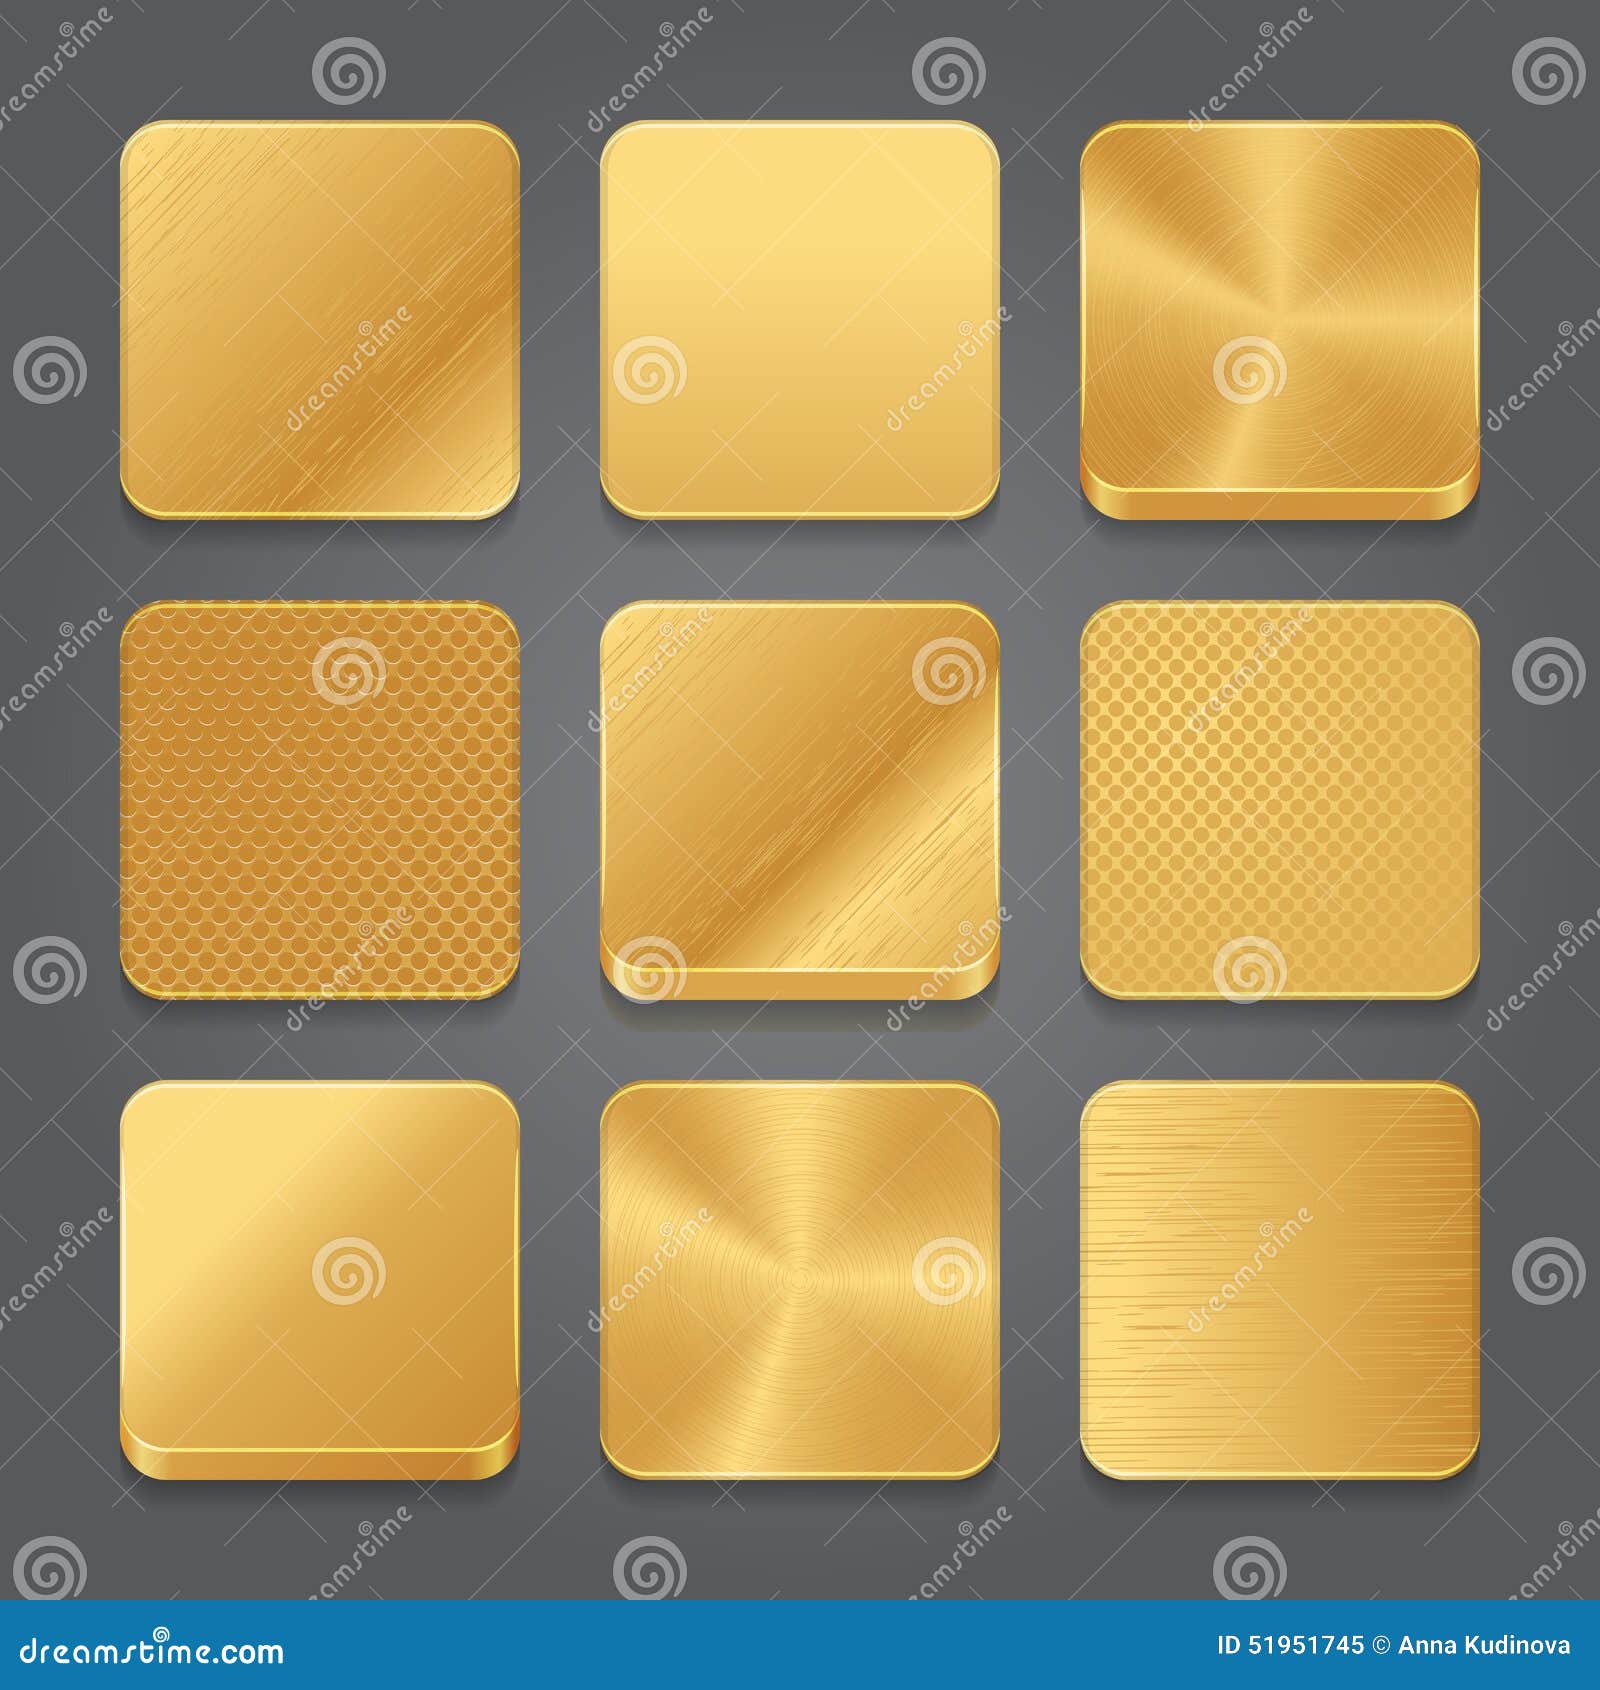 Bộ nền biểu tượng ứng dụng và Biểu tượng nút kim loại vàng chủ đề sẽ giúp trang web của bạn trở nên sang trọng và độc đáo hơn. Hãy xem qua hình ảnh để lựa chọn bộ nền biểu tượng ứng dụng phù hợp và sáng tạo cho trang web của bạn.